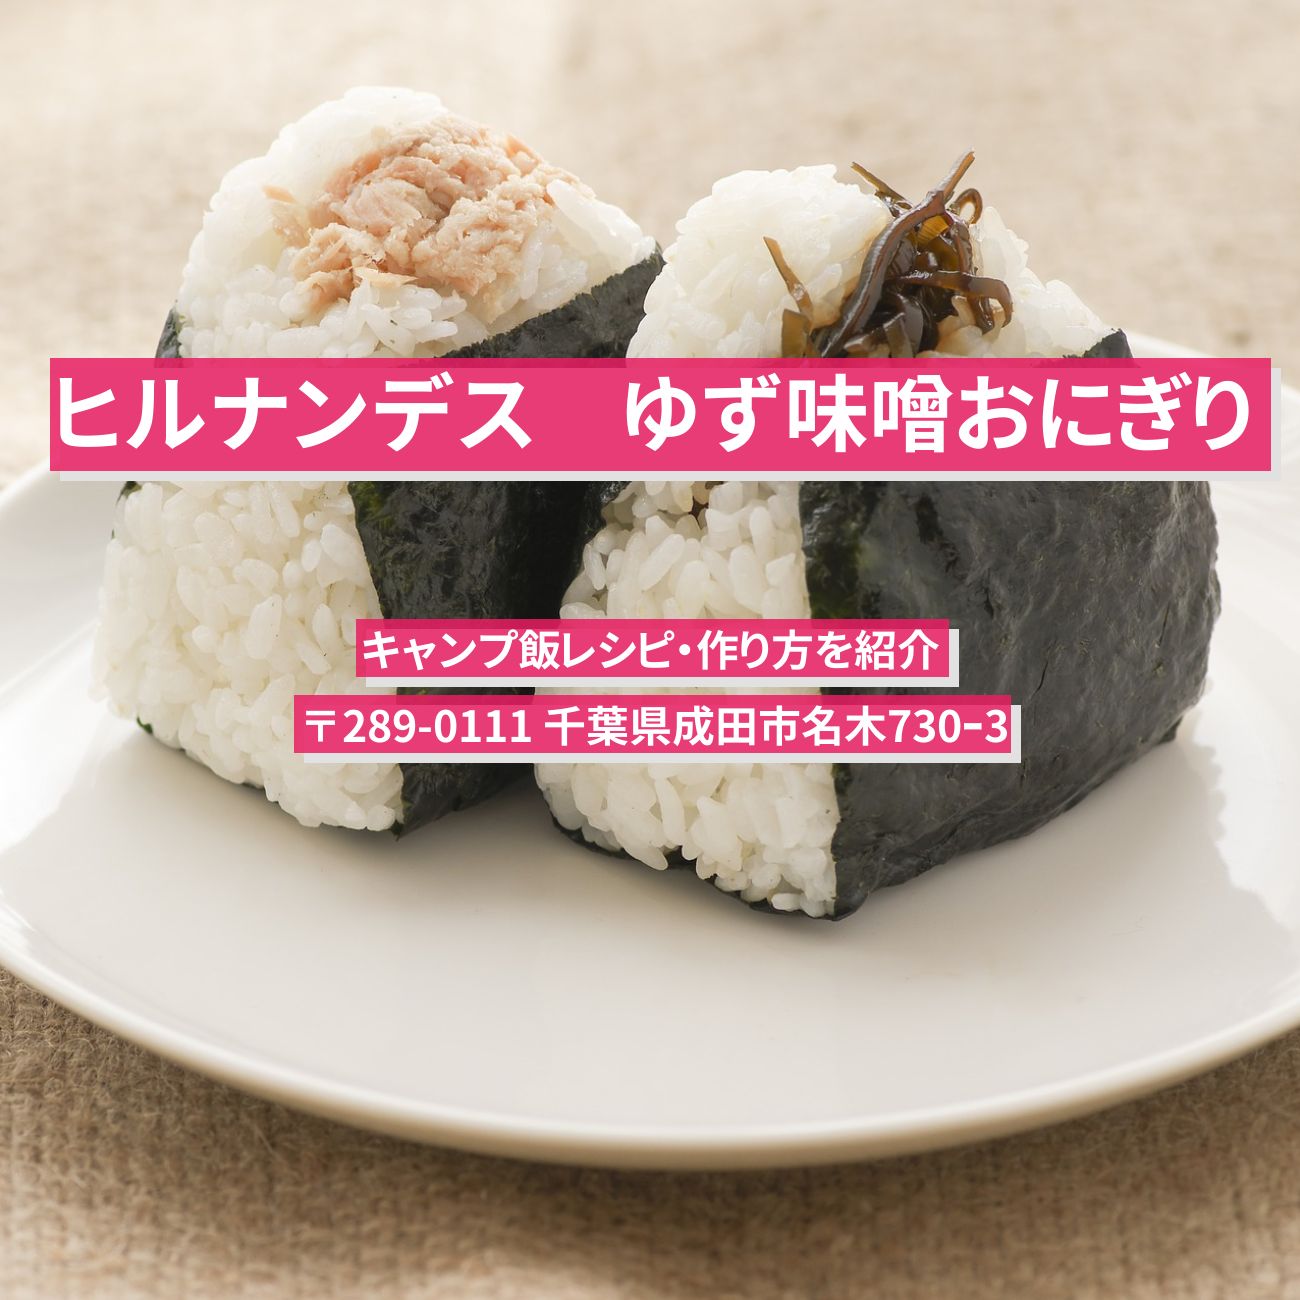 【ヒルナンデス】『ゆず味噌おにぎり』キャンプ飯レシピ・作り方を紹介